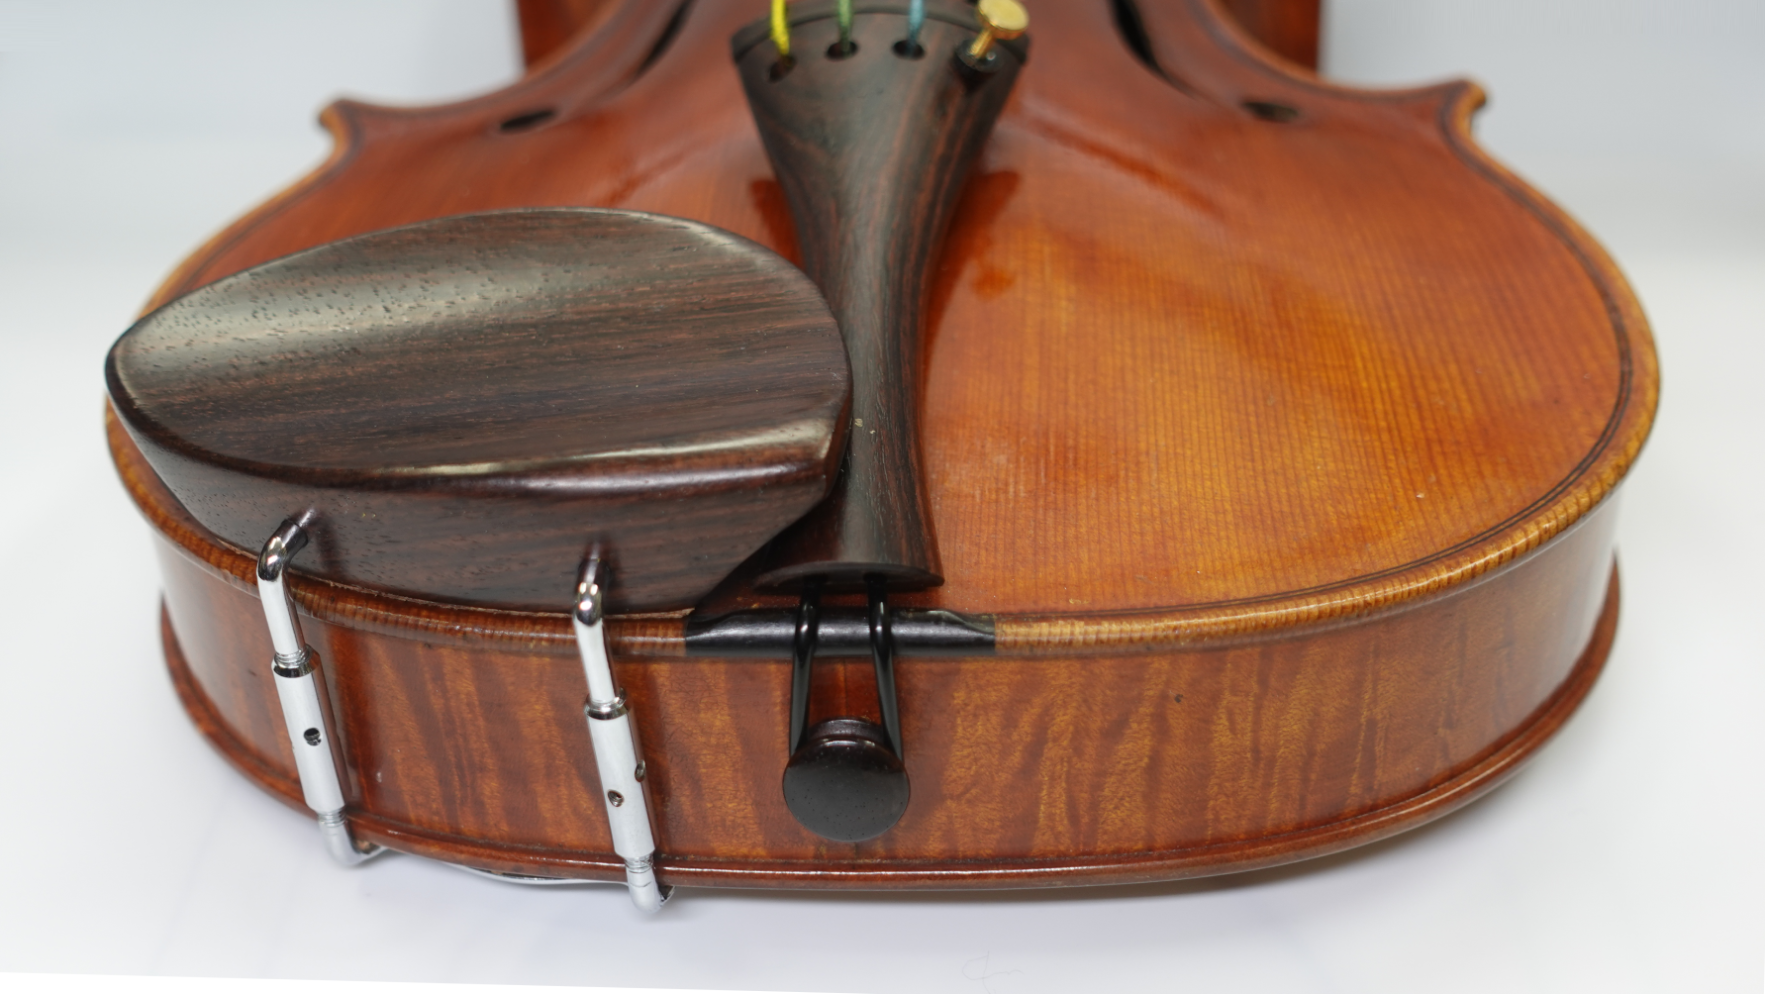 縞黒檀バイオリン顎当て ガラスコート仕上げ スドラド型 低価格の 49.0